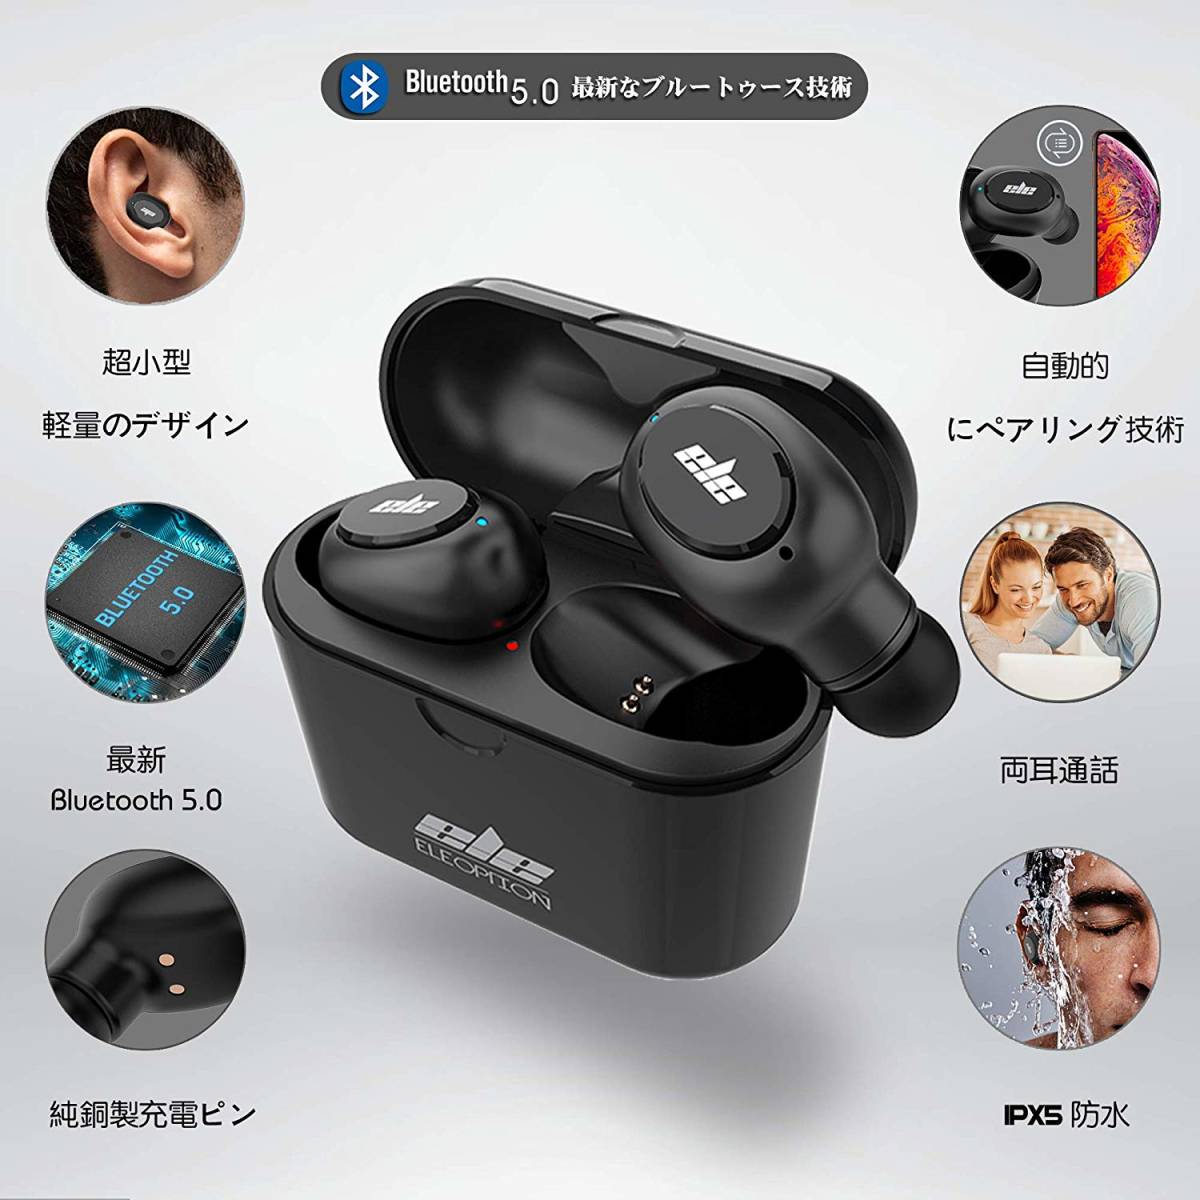 [藍牙5.0增強版本]完全無線耳機的Hi-Fi高品質自動配對呼叫對應兩個耳朵IPX5級防水防汗超級迷你尺寸 原文:【Bluetooth 5.0強化版】完全 ワイヤレスイヤホン Hi-Fi高音質 自動的にペアリング 両耳通話対応 IPX5等級防水防汗 超ミニサイズ 